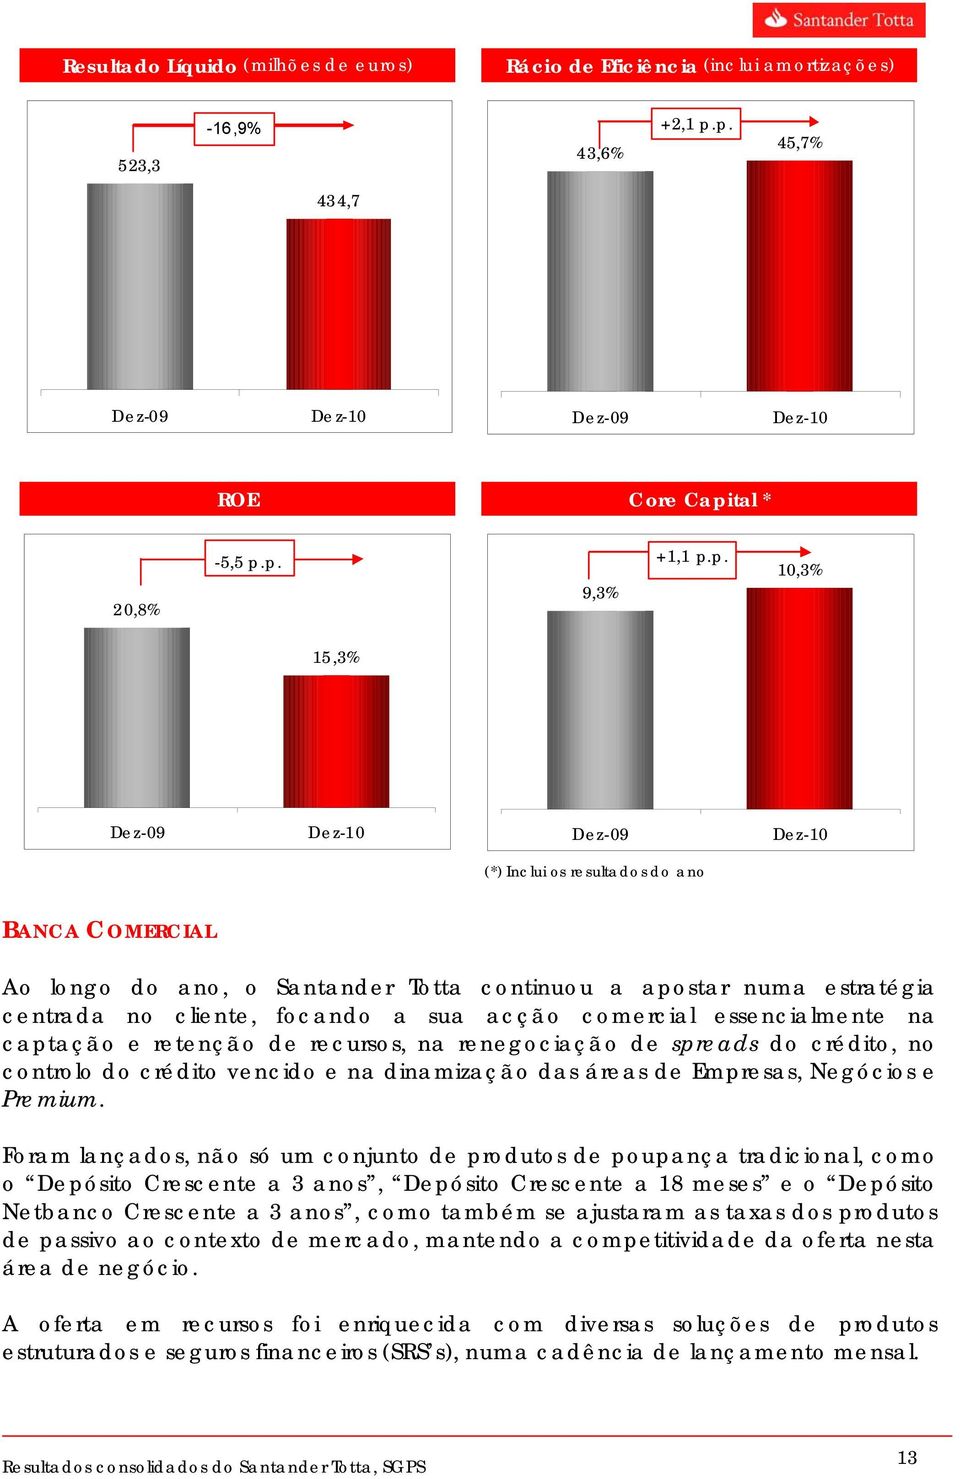 ano, o Santander Totta continuou a apostar numa estratégia centrada no cliente, focando a sua acção comercial essencialmente na captação e retenção de recursos, na renegociação de spreads do crédito,